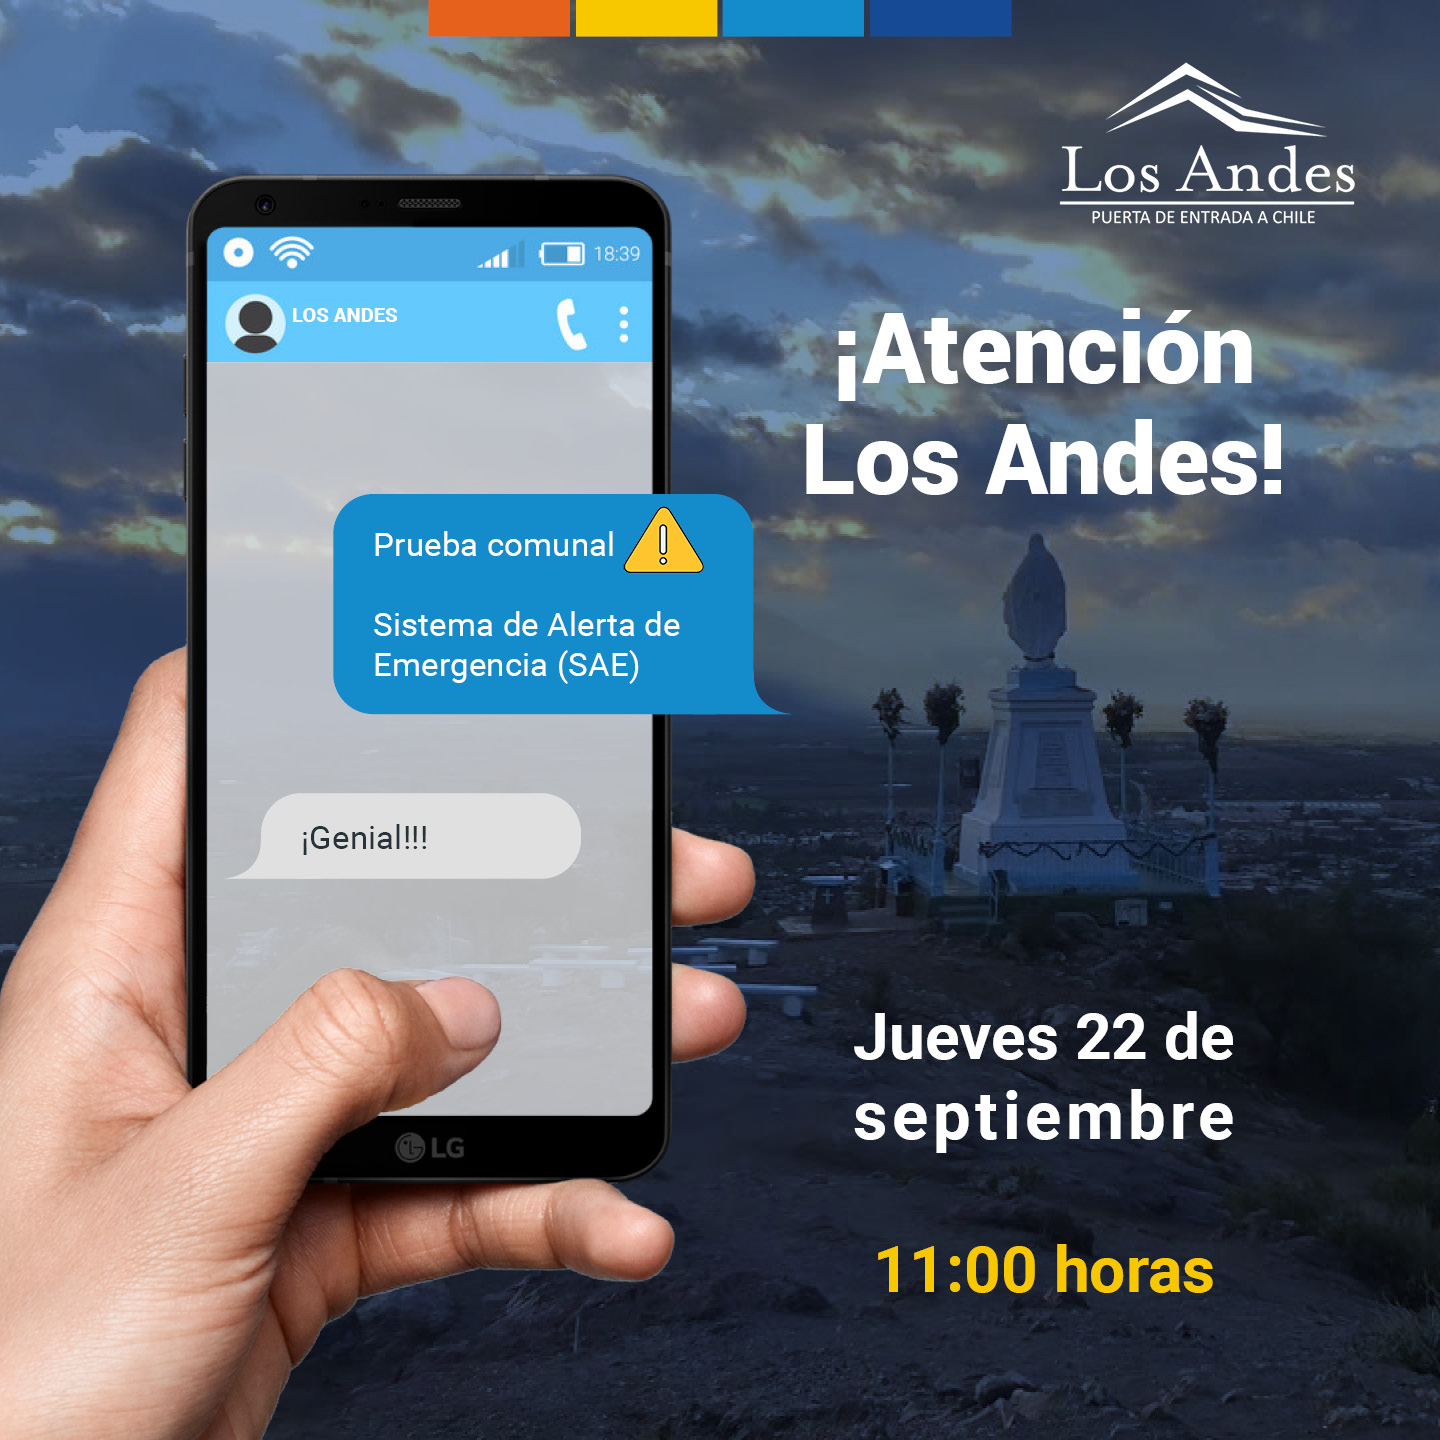 LOS ANDES: Mañana se realizará una prueba del Sistema de Alerta de Emergencia (SAE) en Los Andes